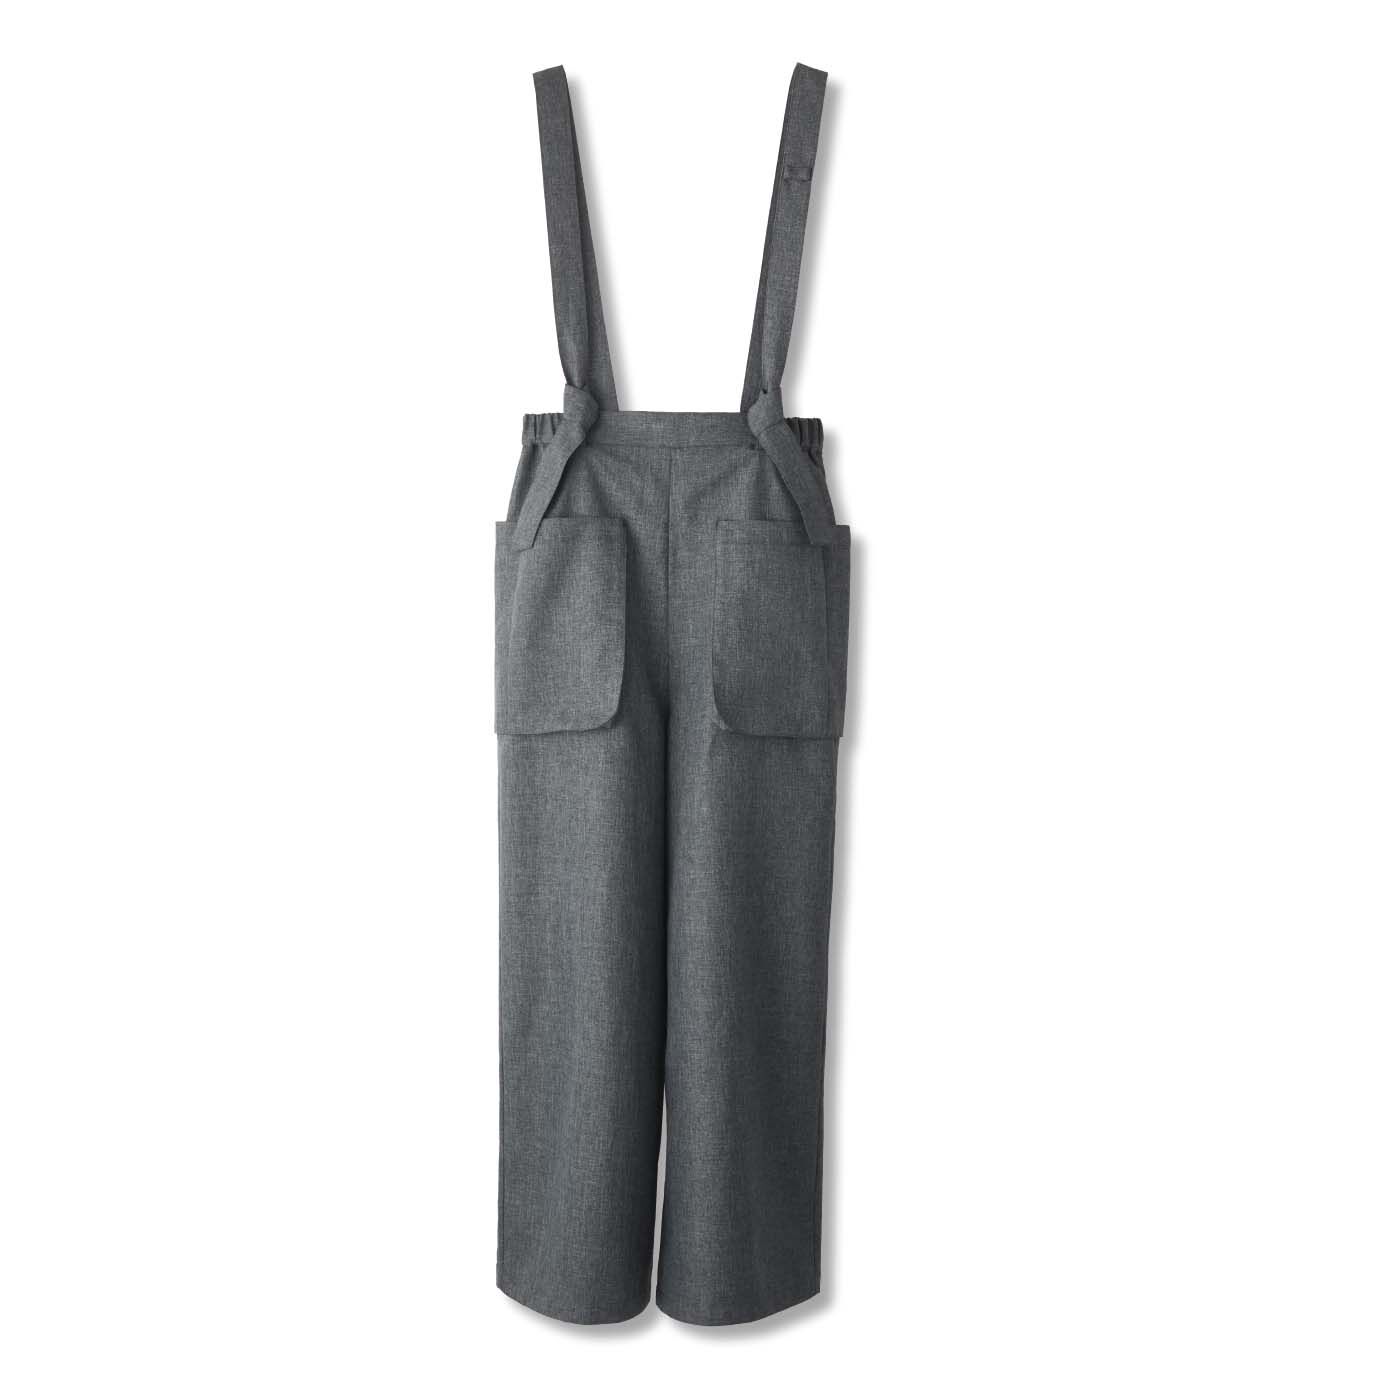 フェリシモの雑貨 Kraso|UP.de　着られるバッグ はたらきもののポケットいっぱい サロペットパンツの会|〈グレー〉　サスペンダーはベルトループにくくりつけて長さ調節可能。取り外して着用することもできます。